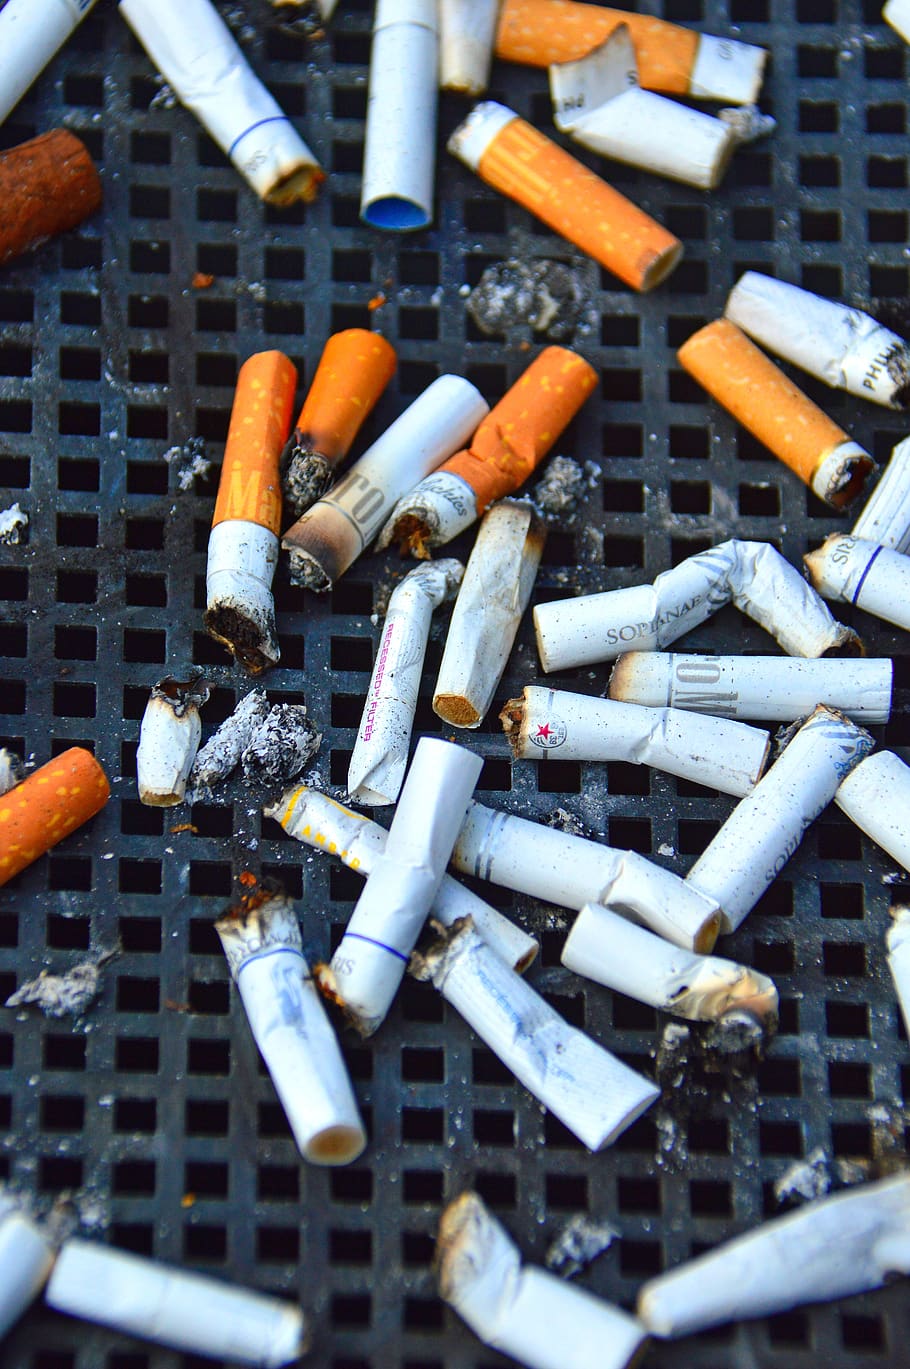 cig, cigarro, chique, bitucas, nicotina, fumo, saúde, estilo de vida, tabaco, hábito